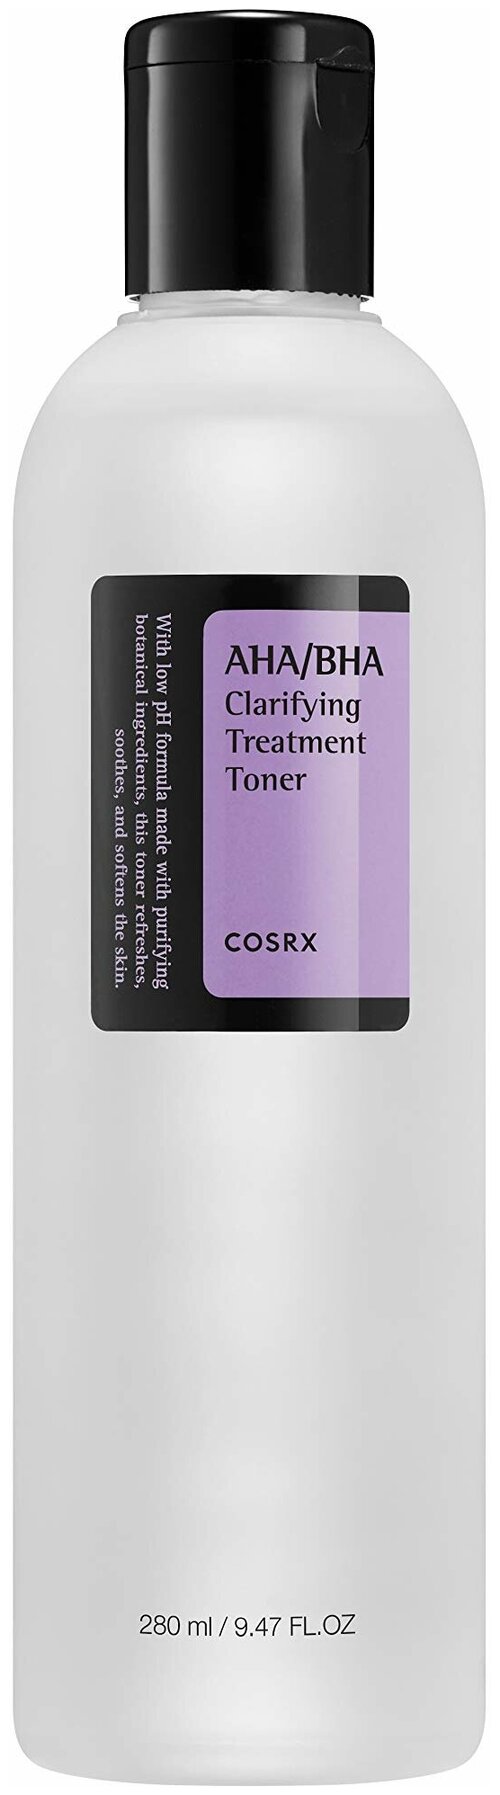 CosRX AHA BHA Clarifying Treatment Toner Тонер очищающий с AHA BHA кислотами, 280 мл